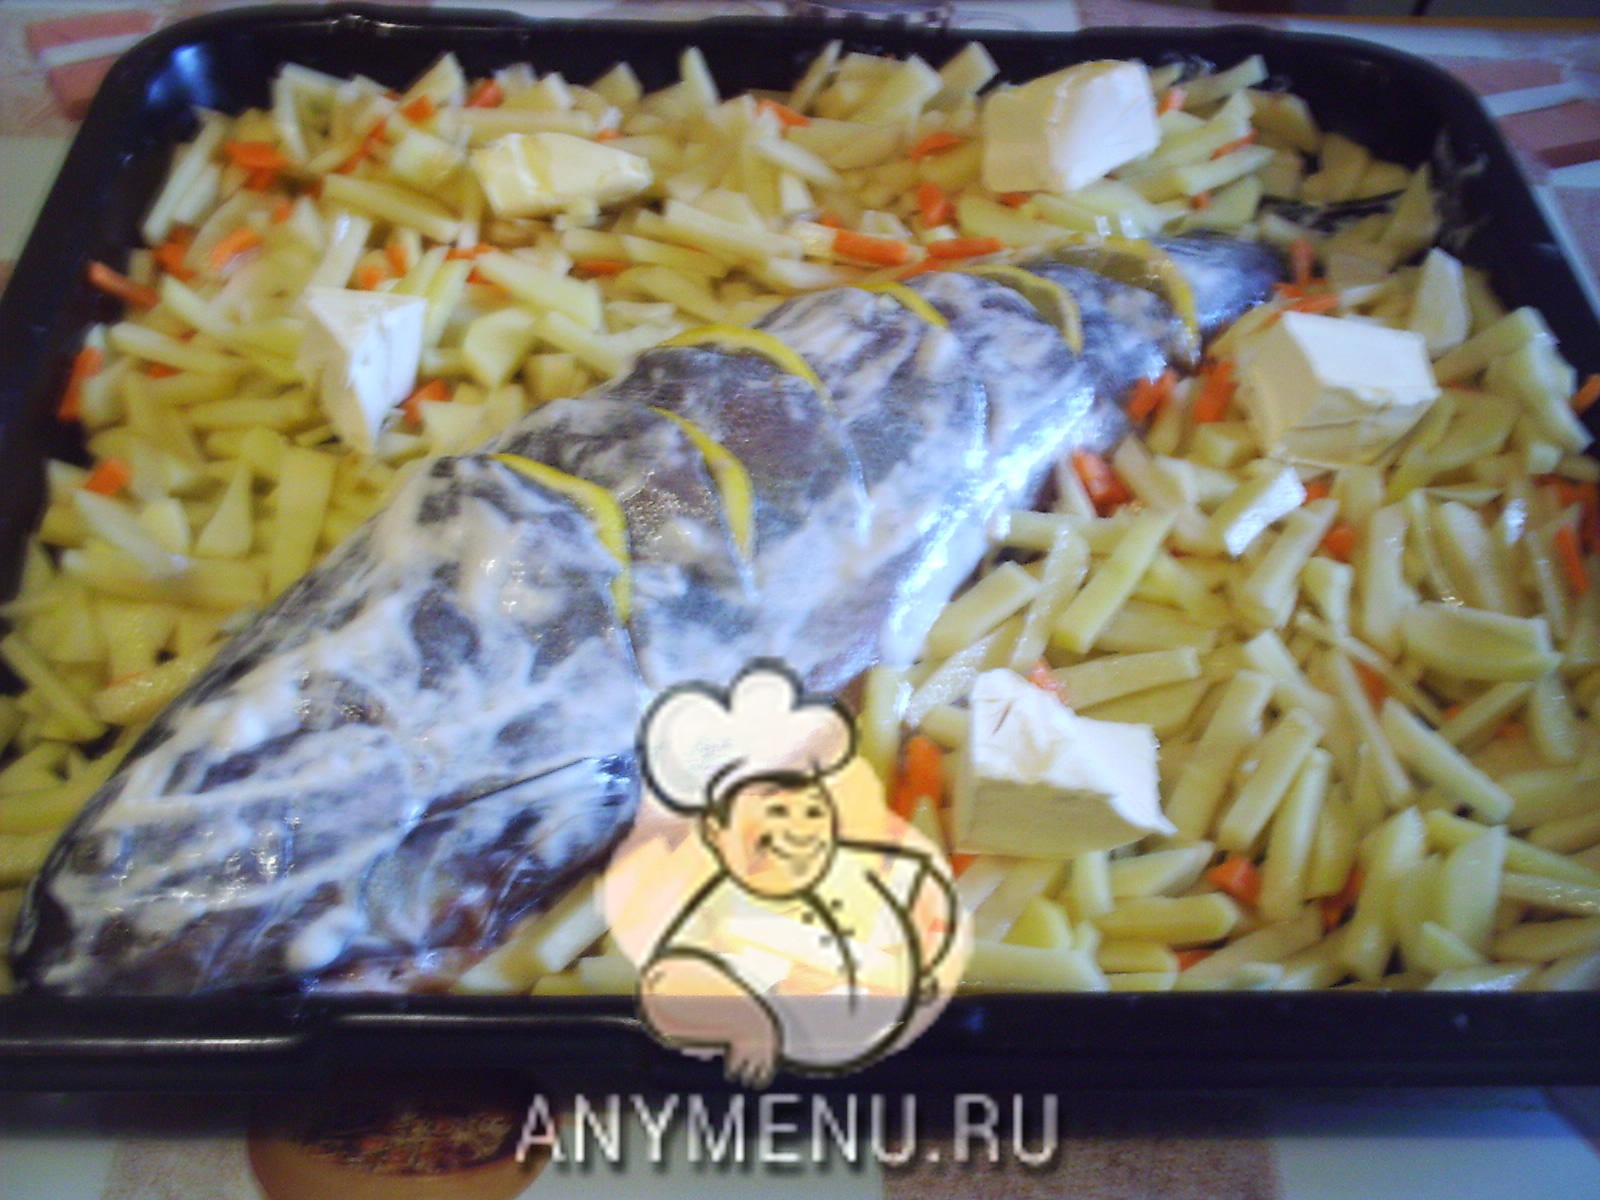 ryba-zapechenaya-s-limonom-i-kartofelem